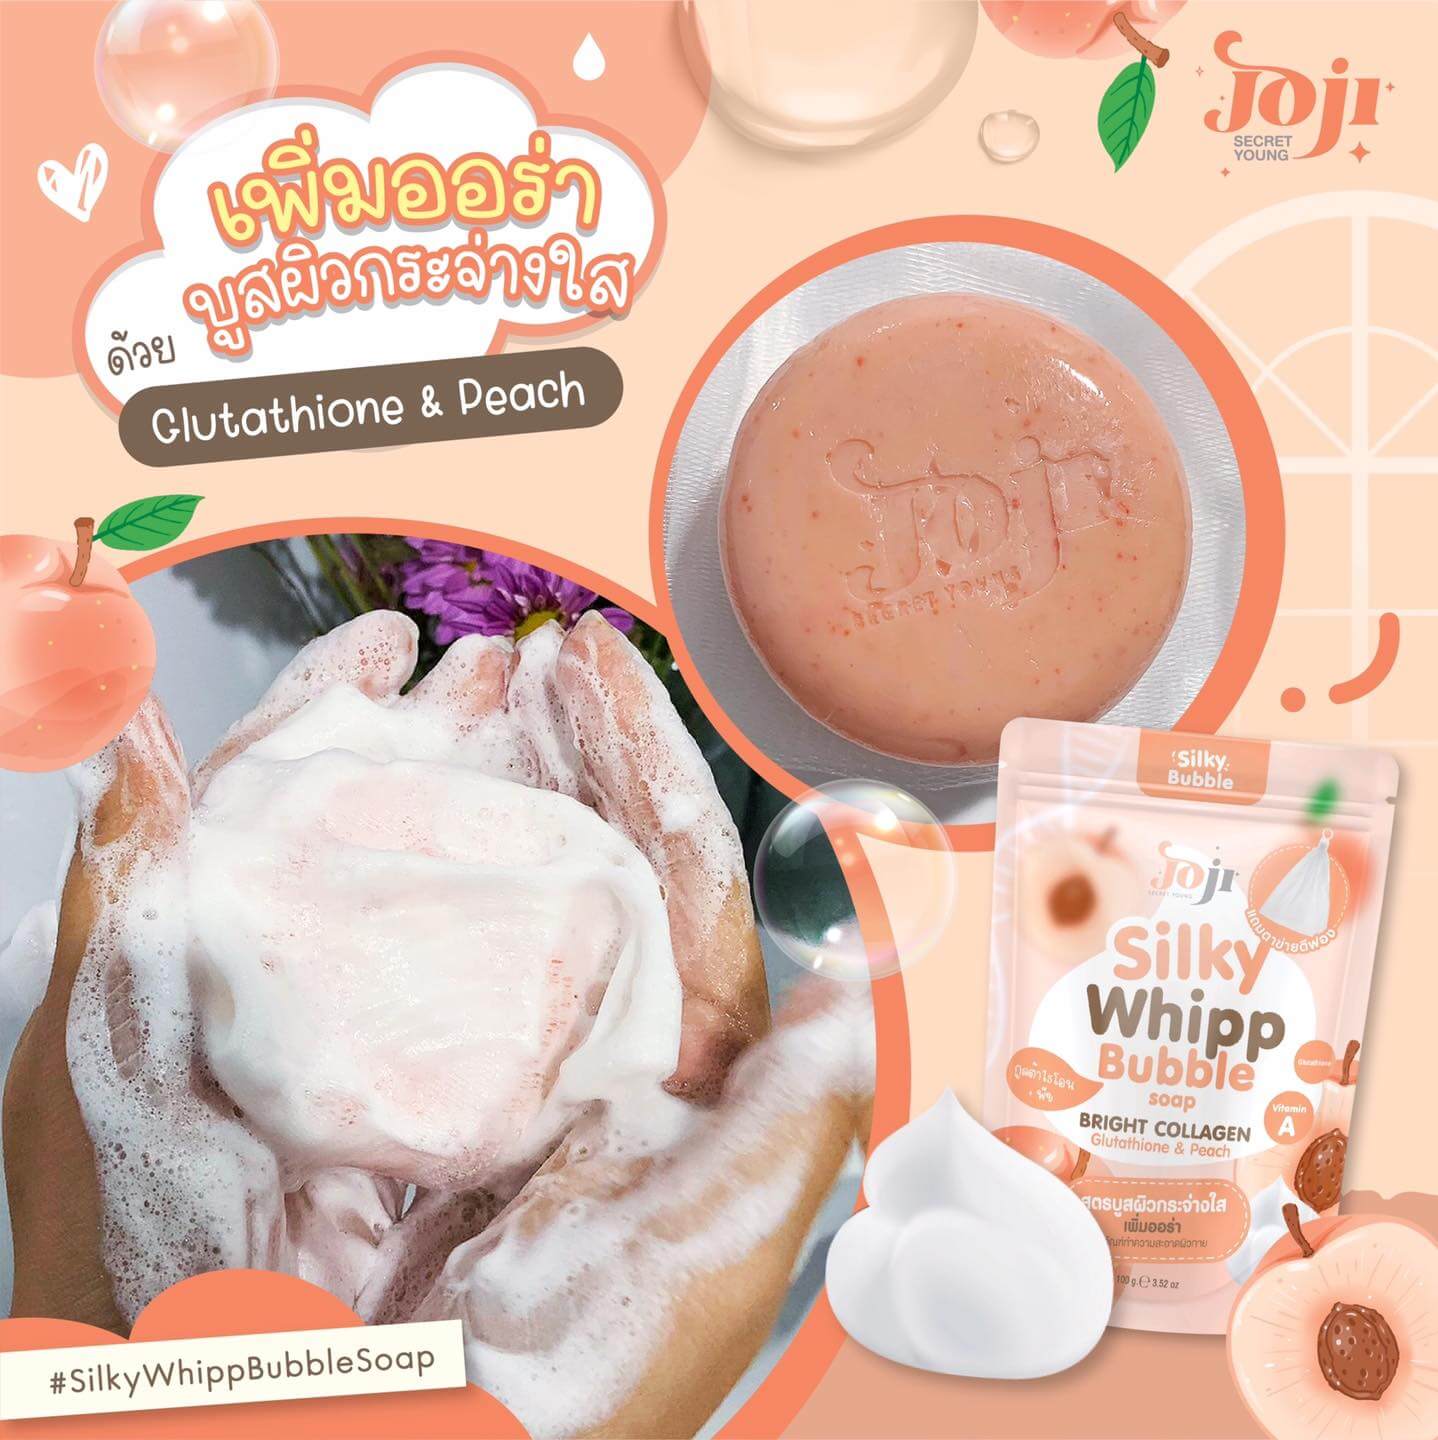 JOJI SECRET YOUNG Silky Whipp Bubble Soap #Bright Collagrn 100g 